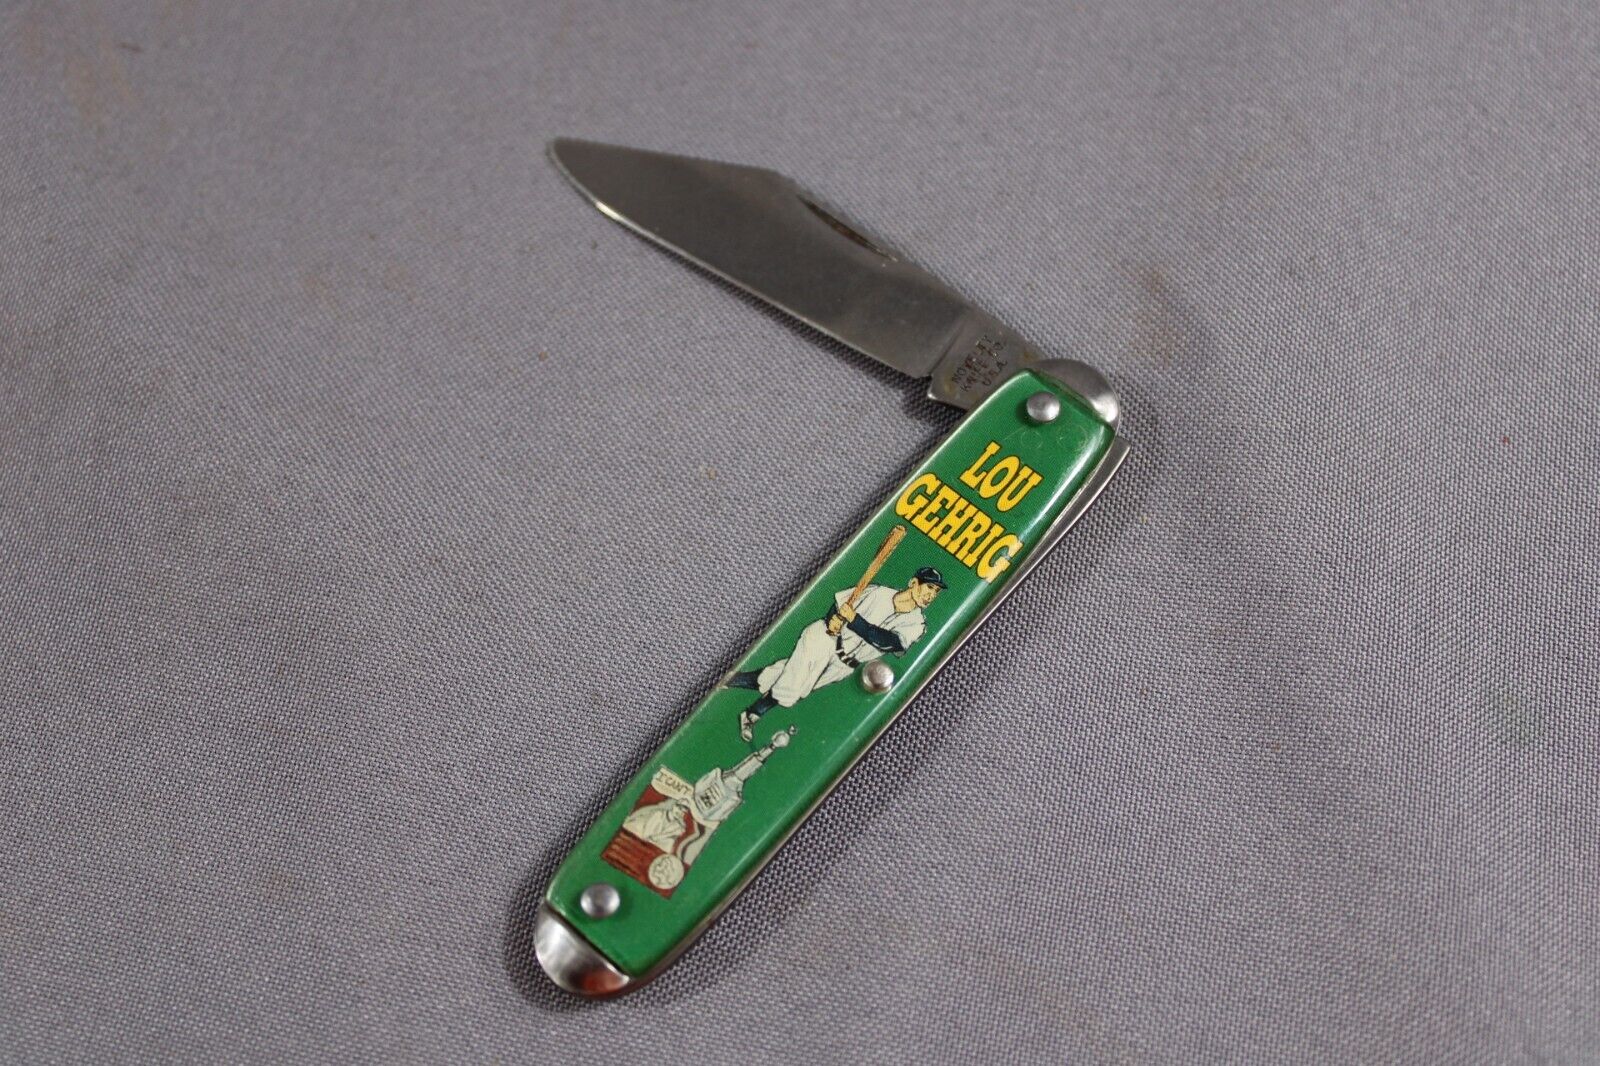 Lou Gehrig Pocket Knife Novelty Knife Co Vintage Baseball